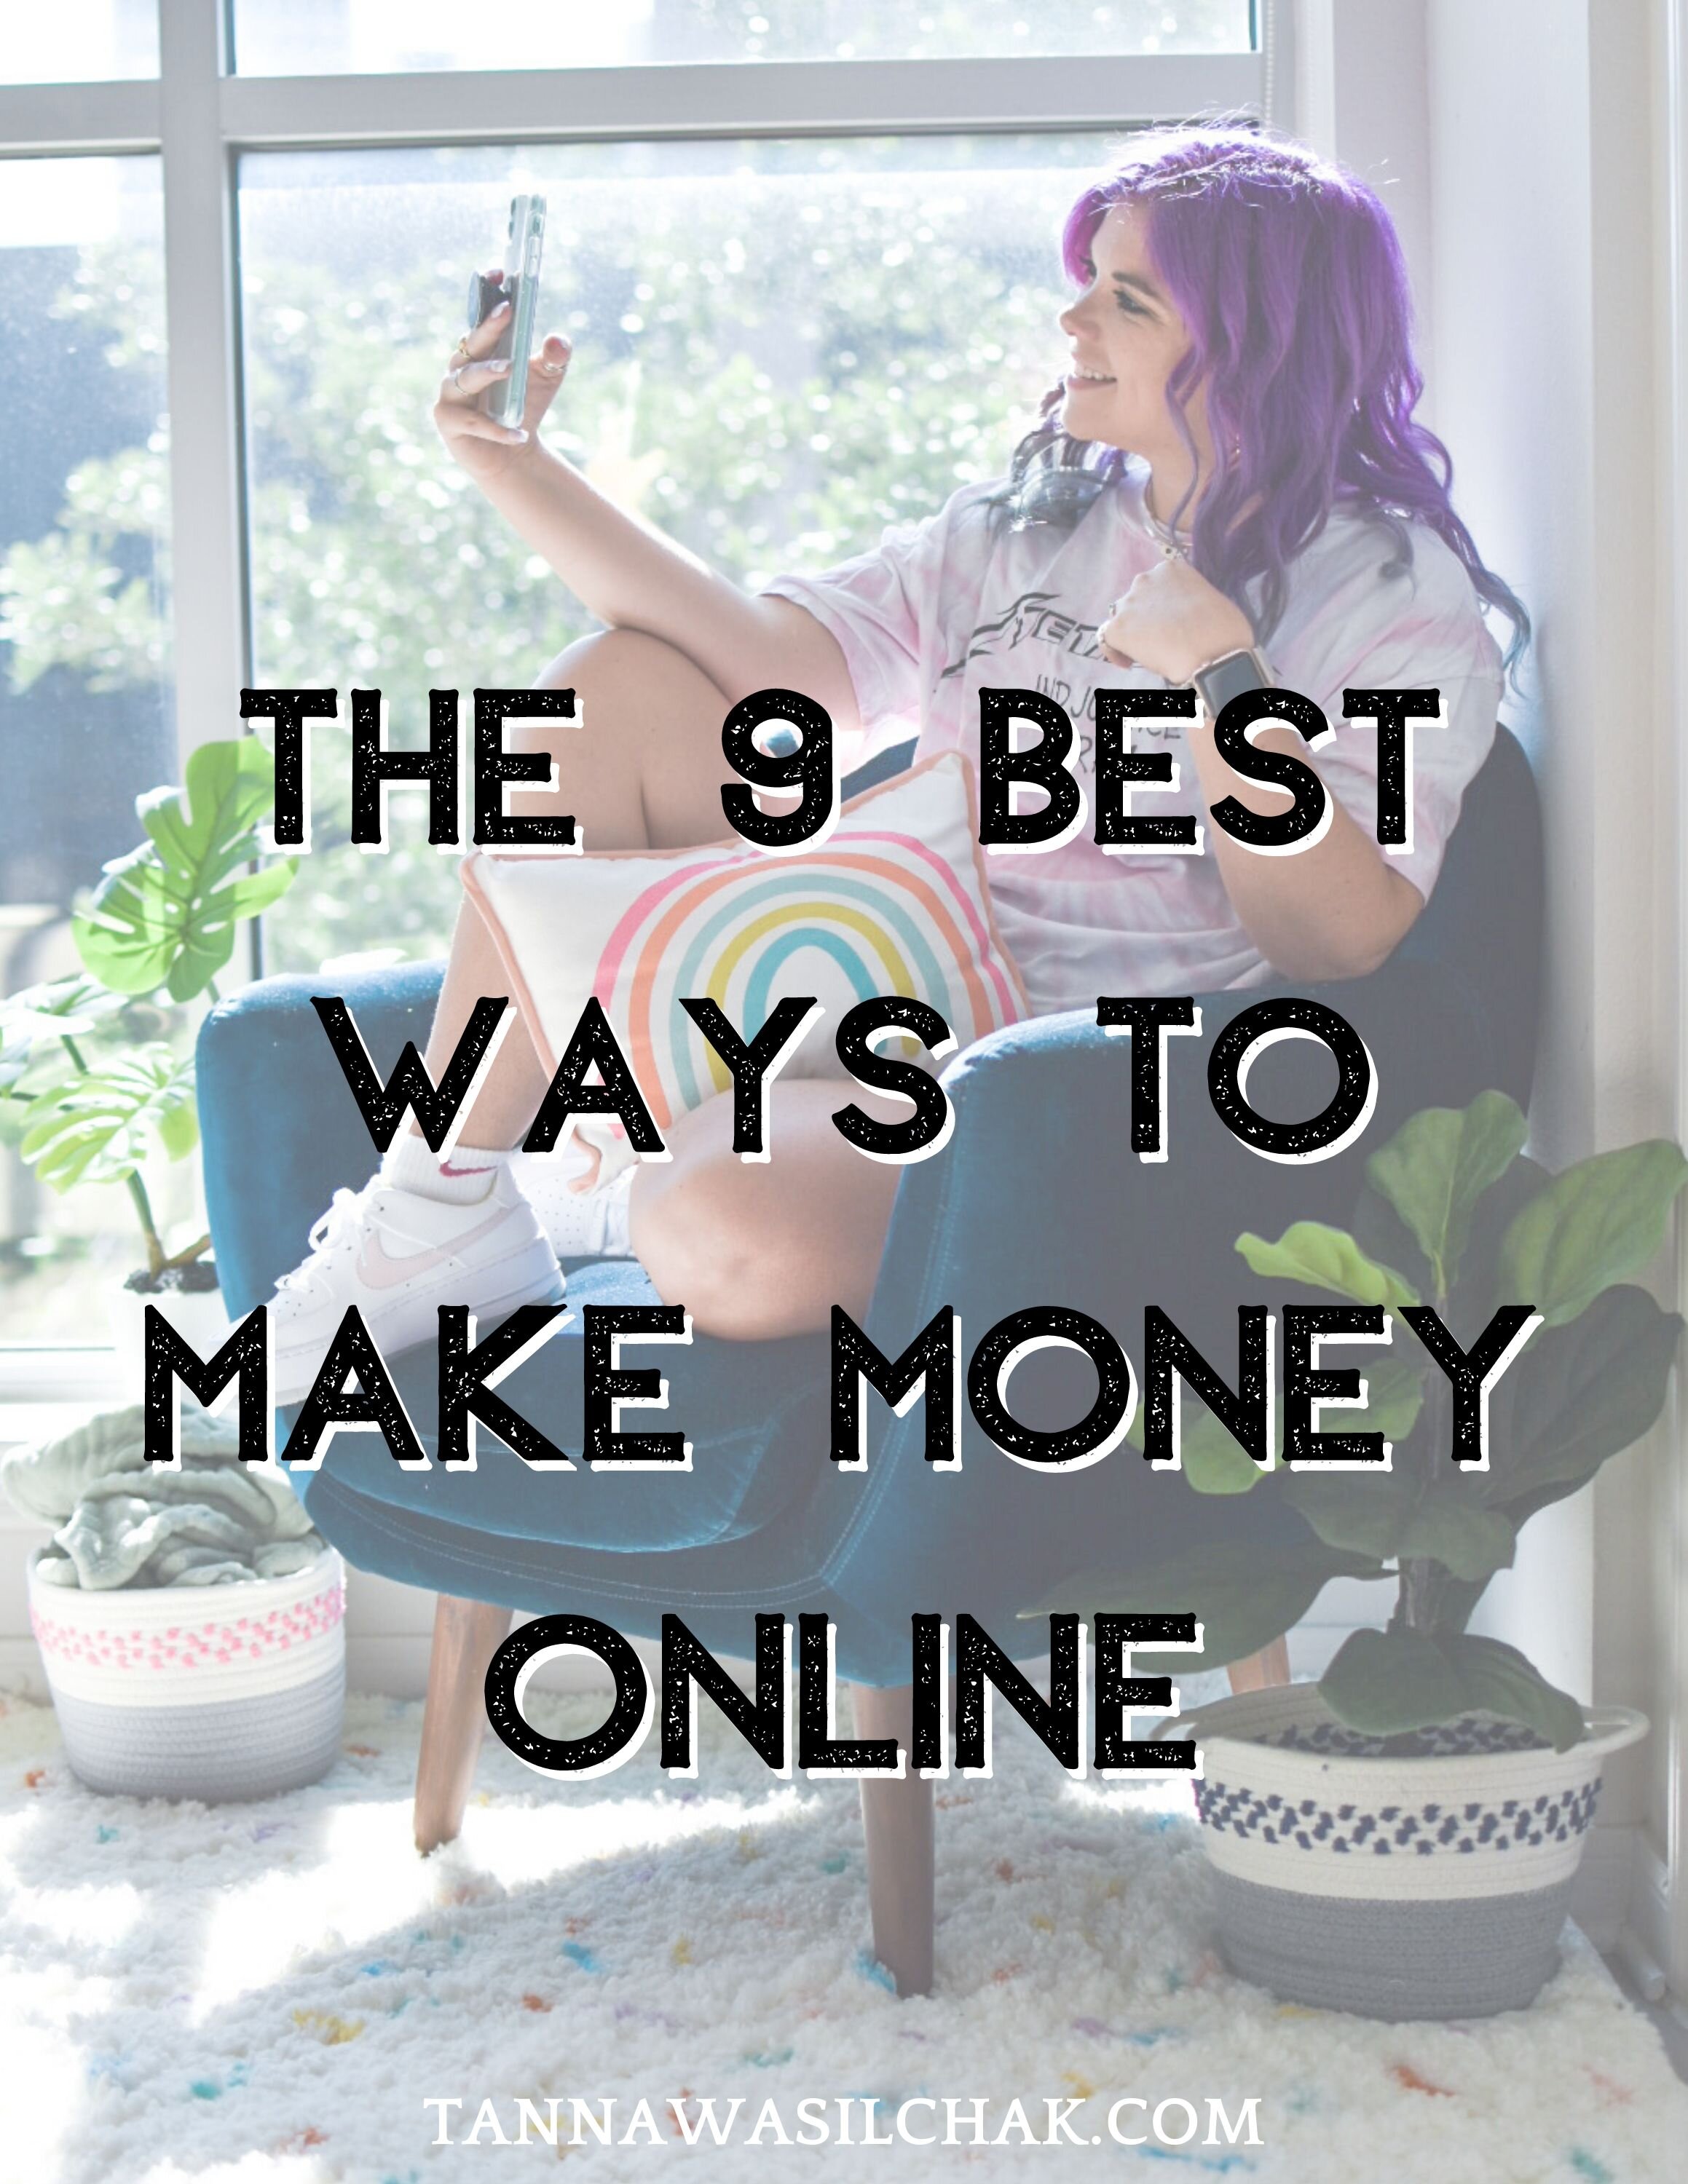 THE 9 BEST WAYS TO MAKE MONEY ONLINE (1).jpg